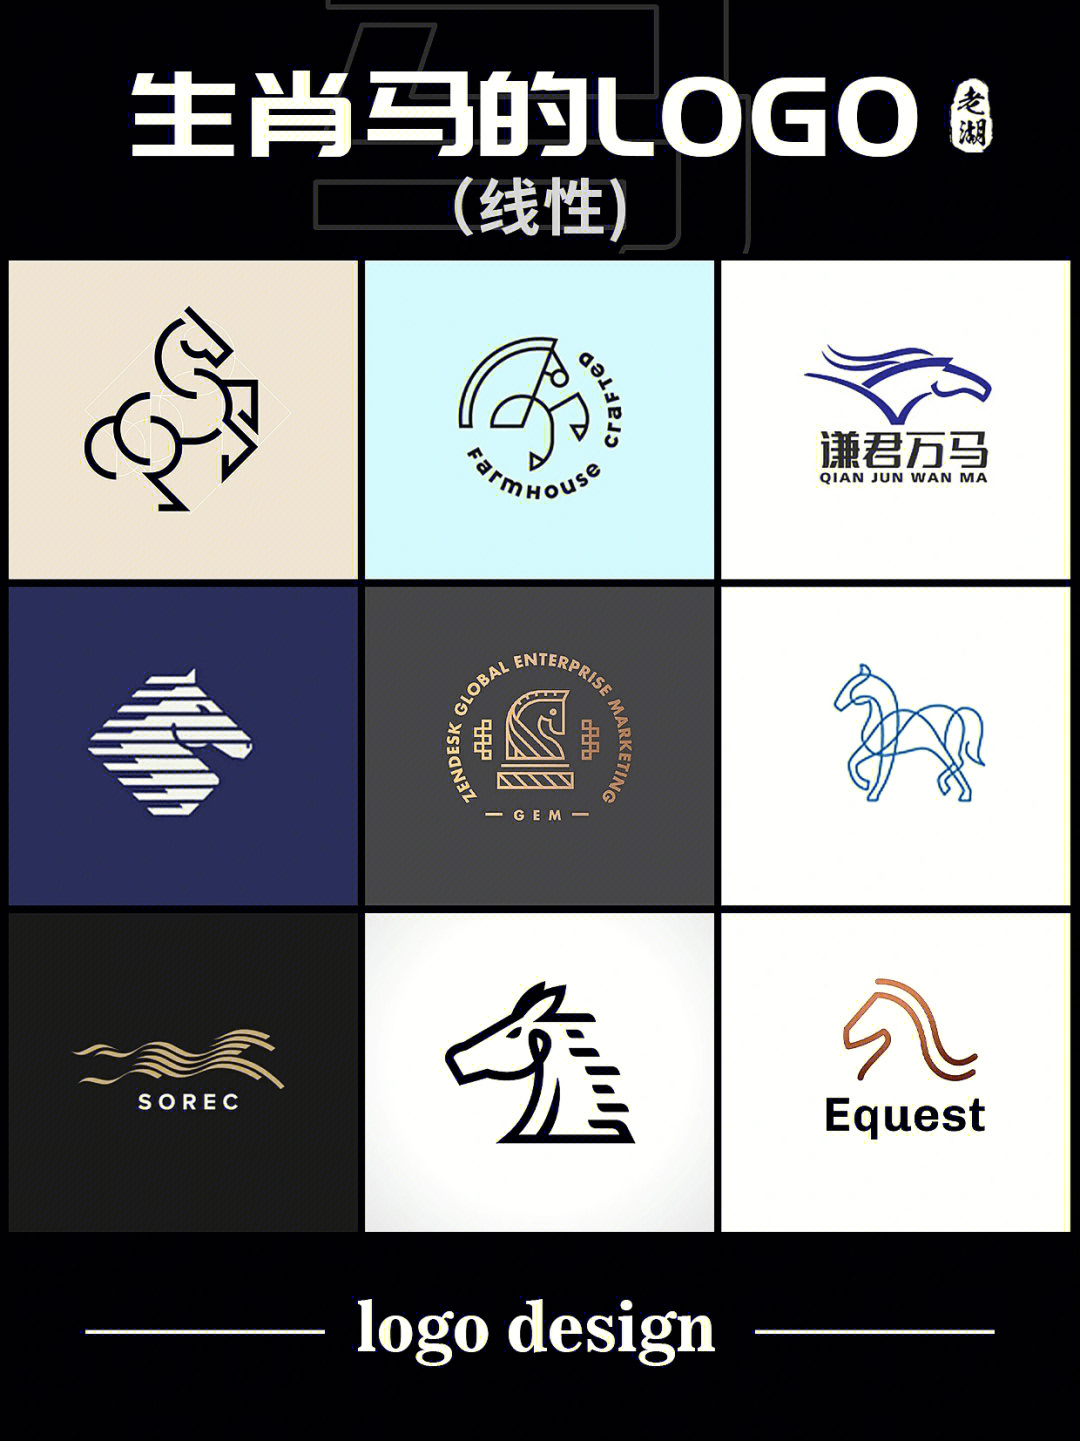 马logo设计十二生肖标志商标灵感合集